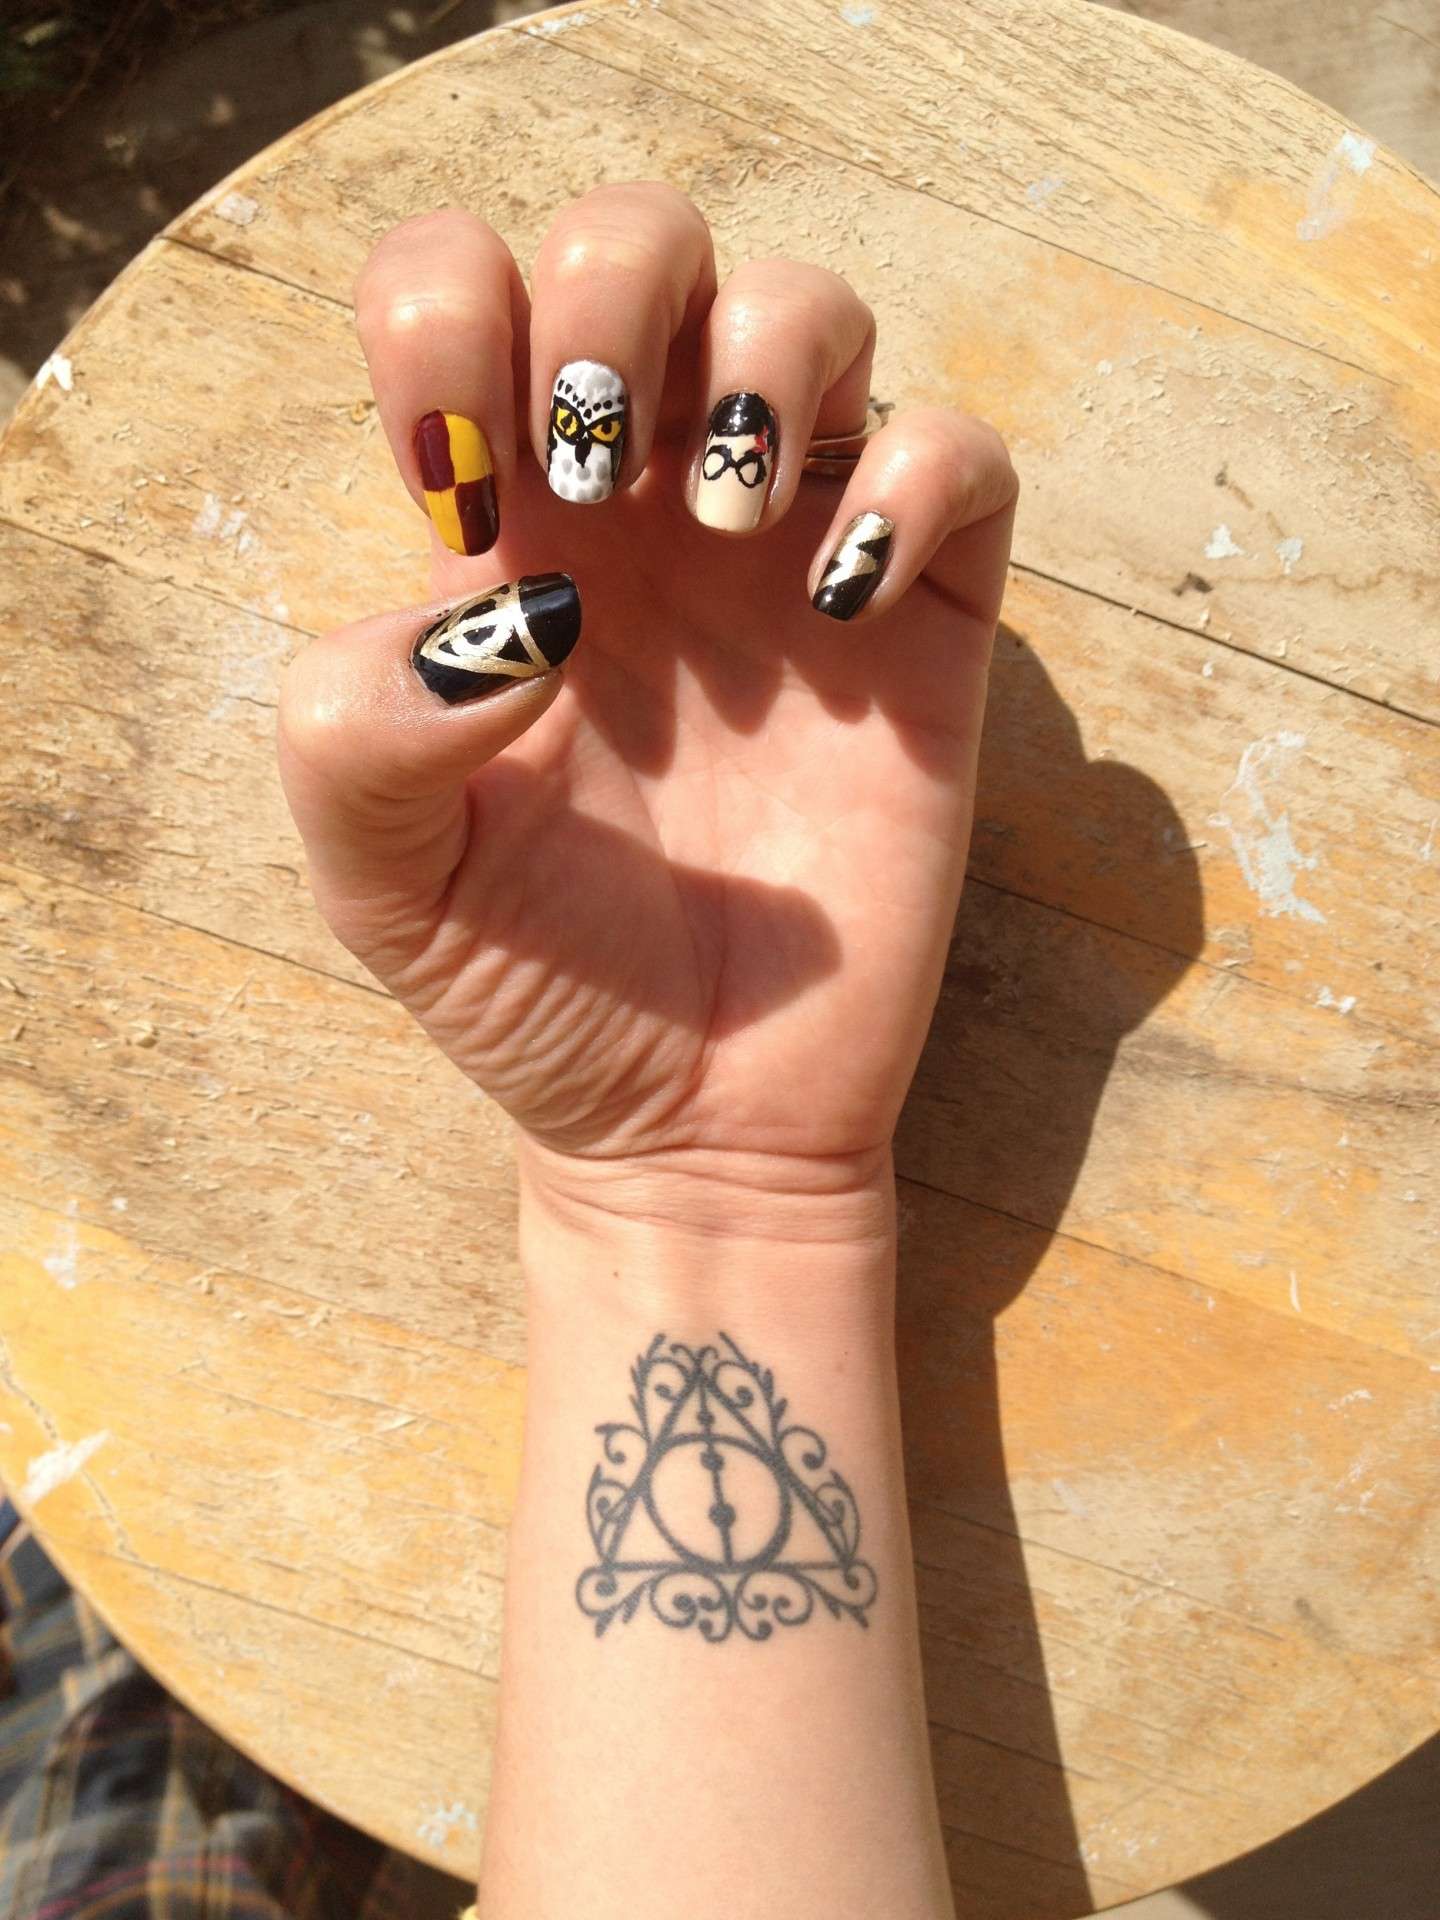 Harry nail art